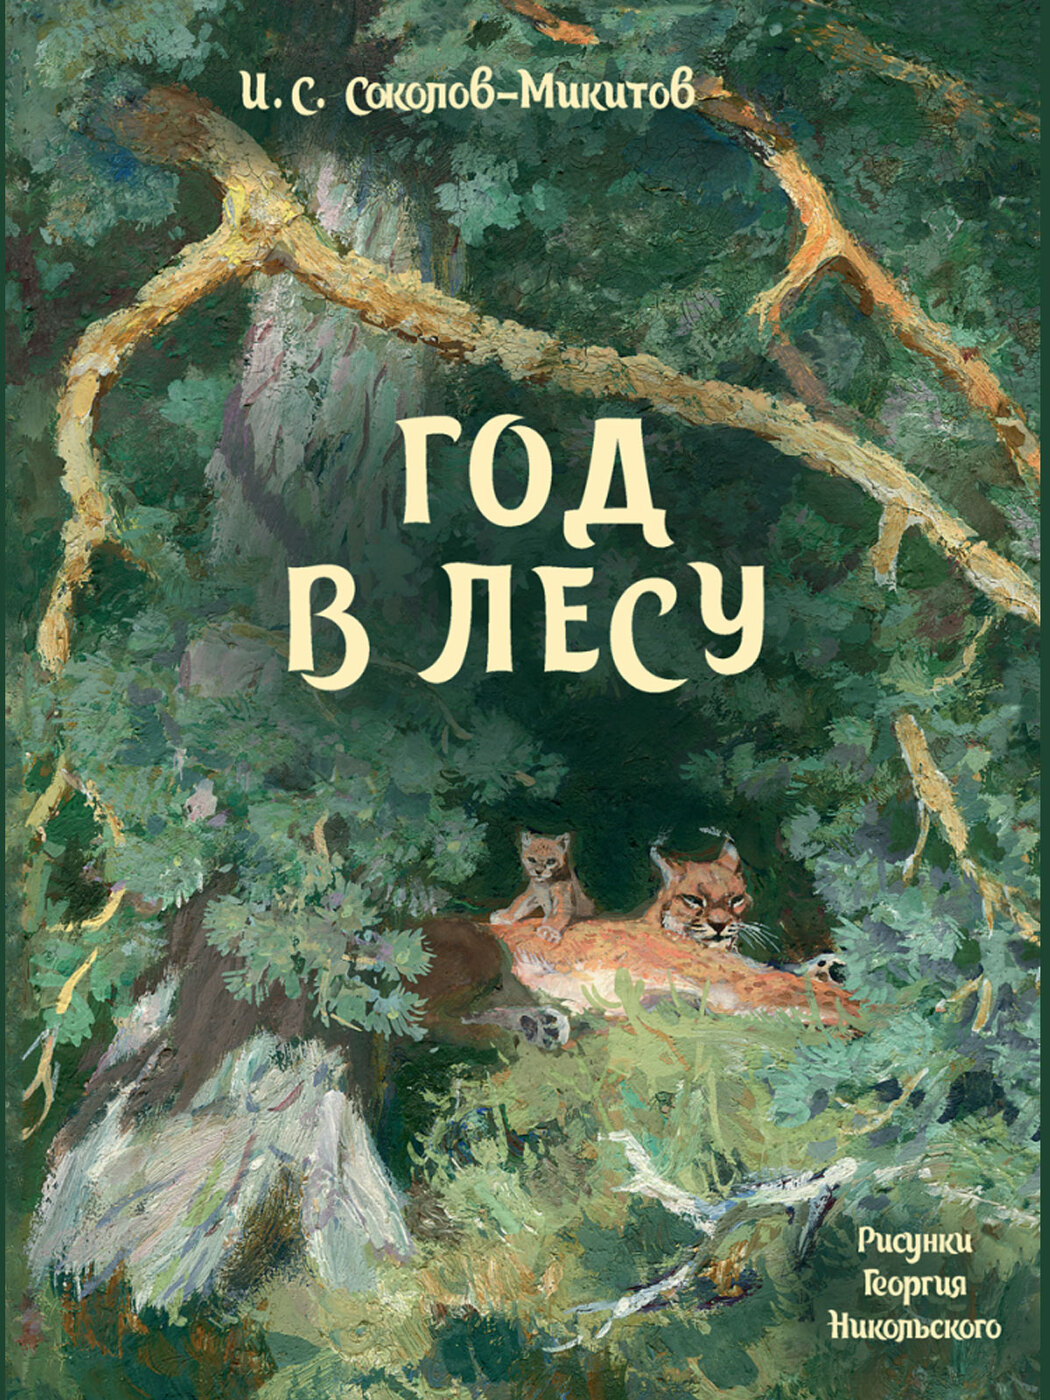 Обложка лесная. Соколов Микитов год в лесу. Год в лесу книга Соколов Микитов. Соколов Микитов год в лесу обложка.